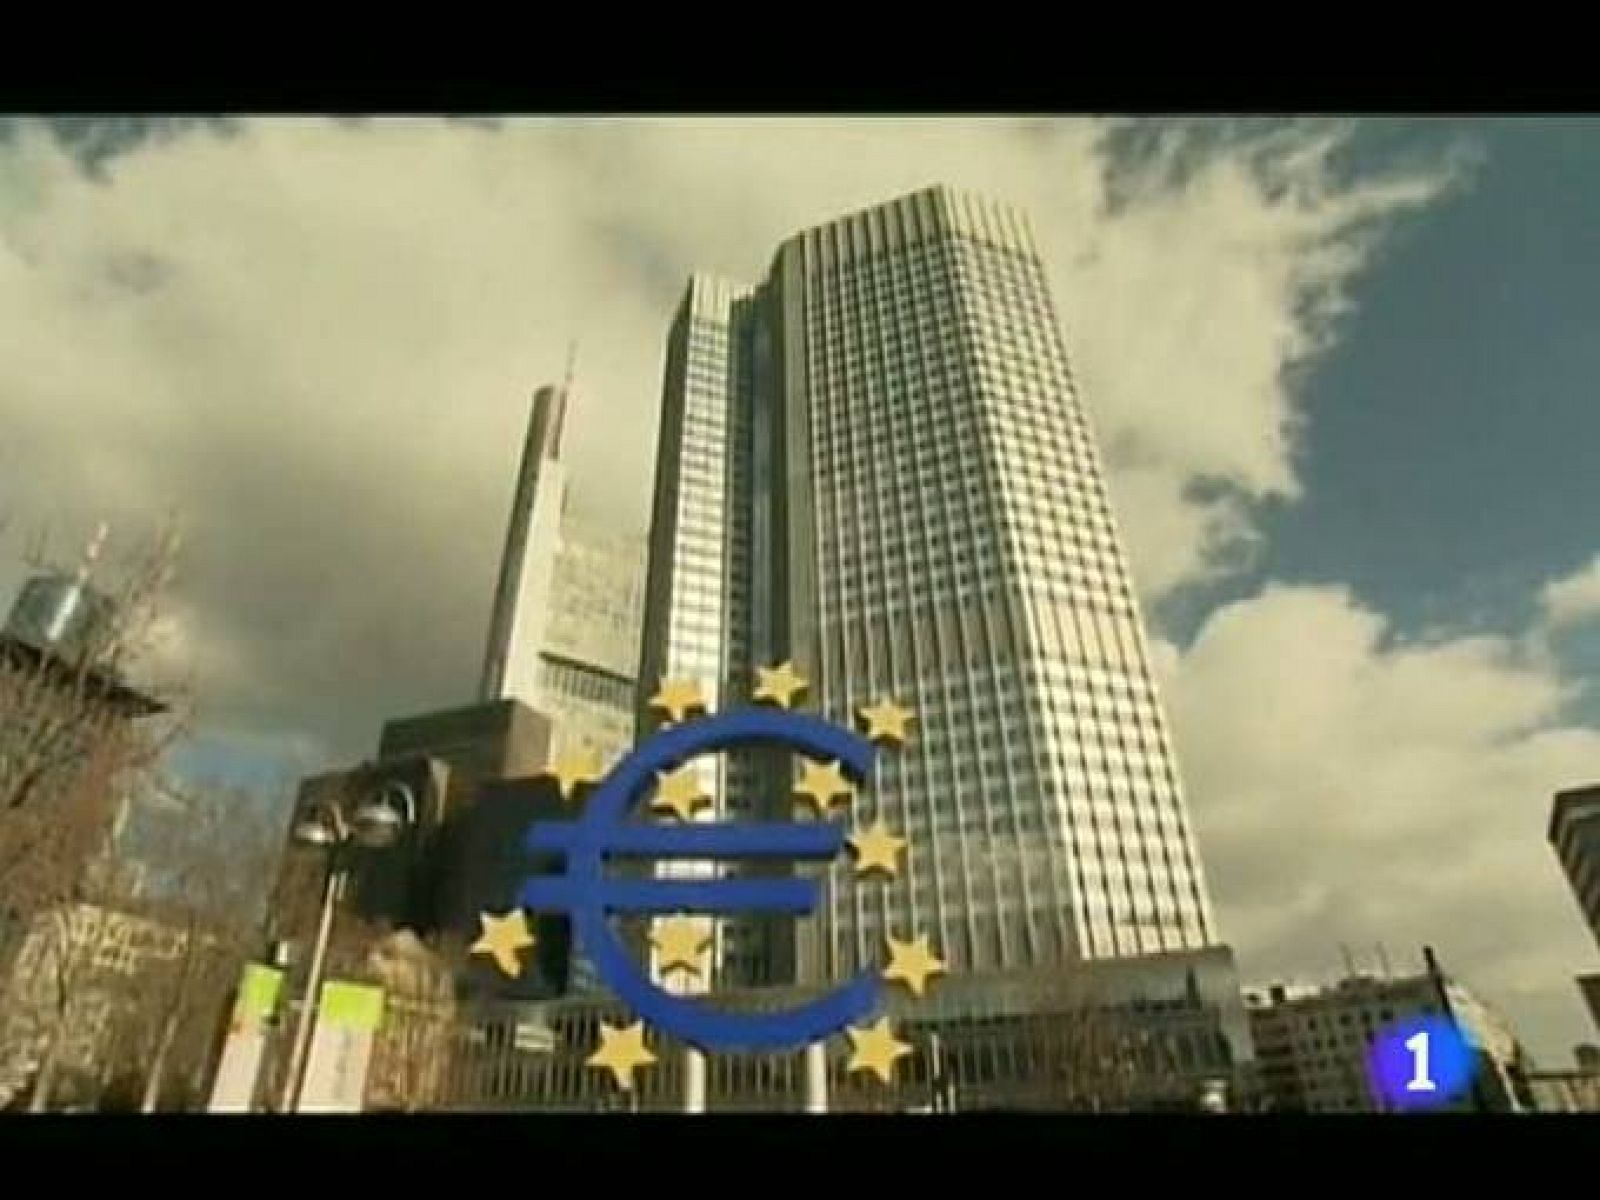 La UE celebrará una cumbre extraordinaria de jefes de Estado y Gobierno de la zona euro